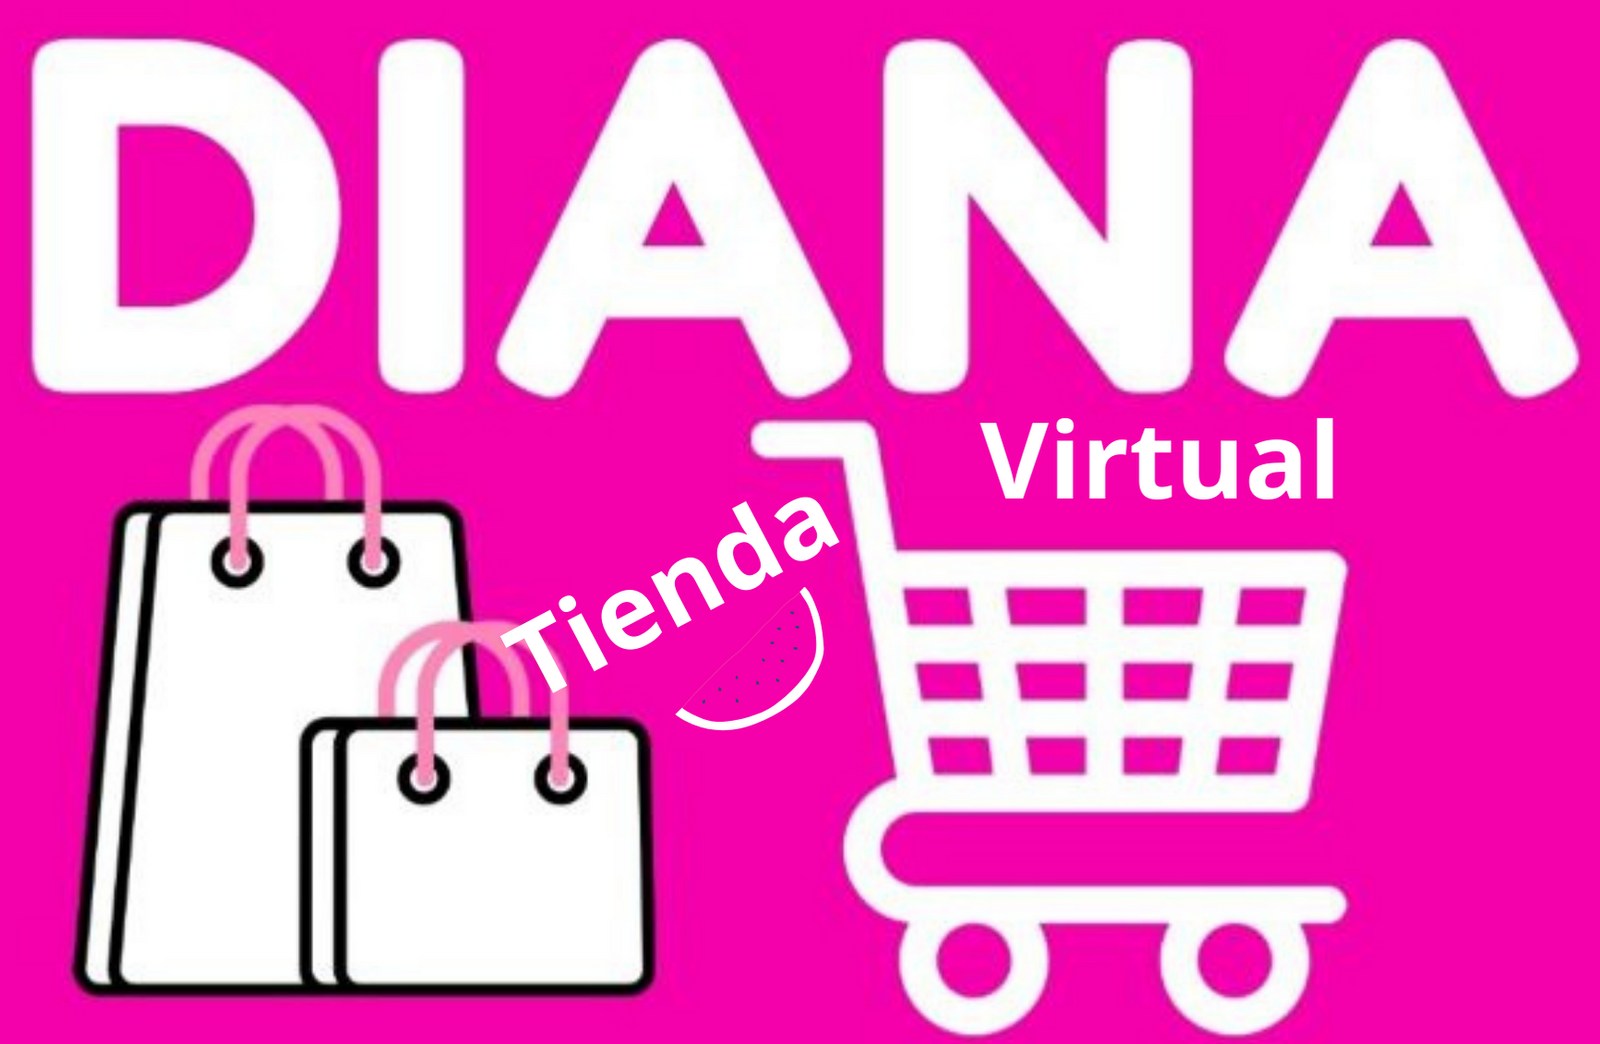 Tienda Virtual Diana